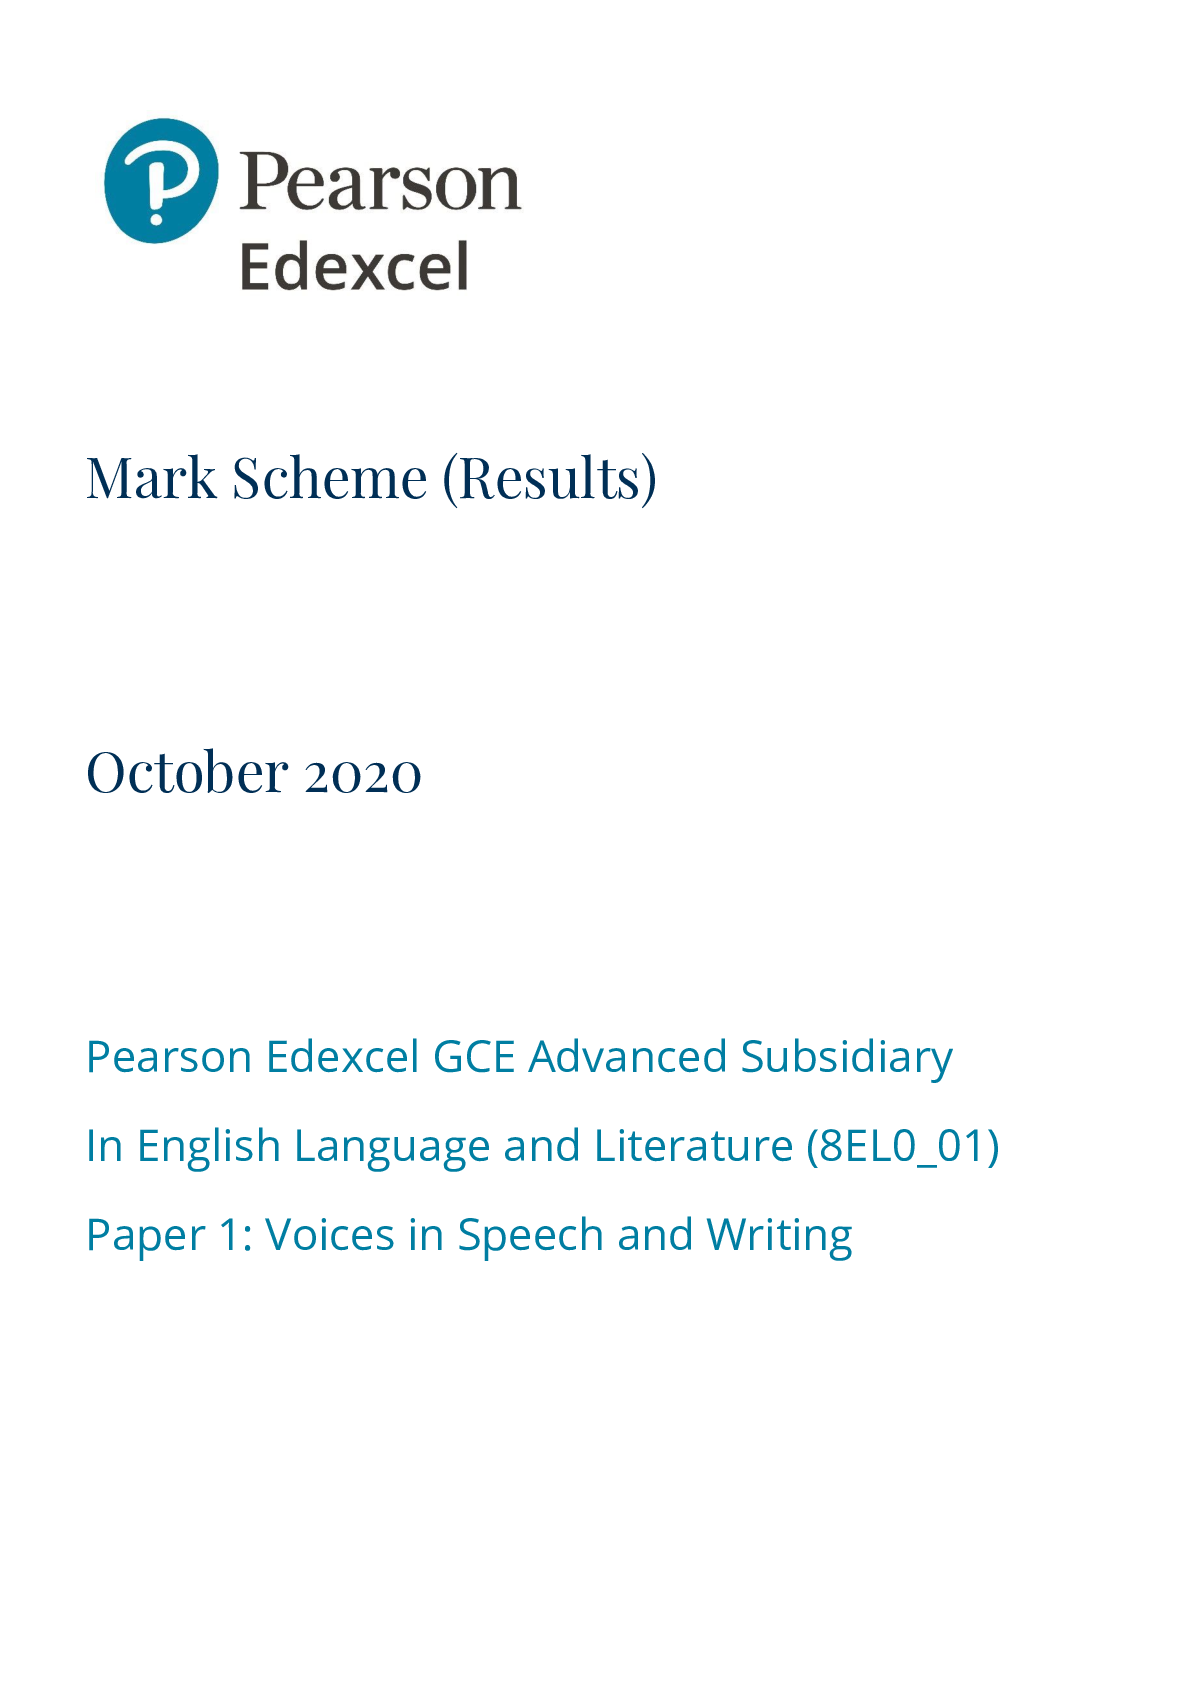 english coursework mark scheme edexcel